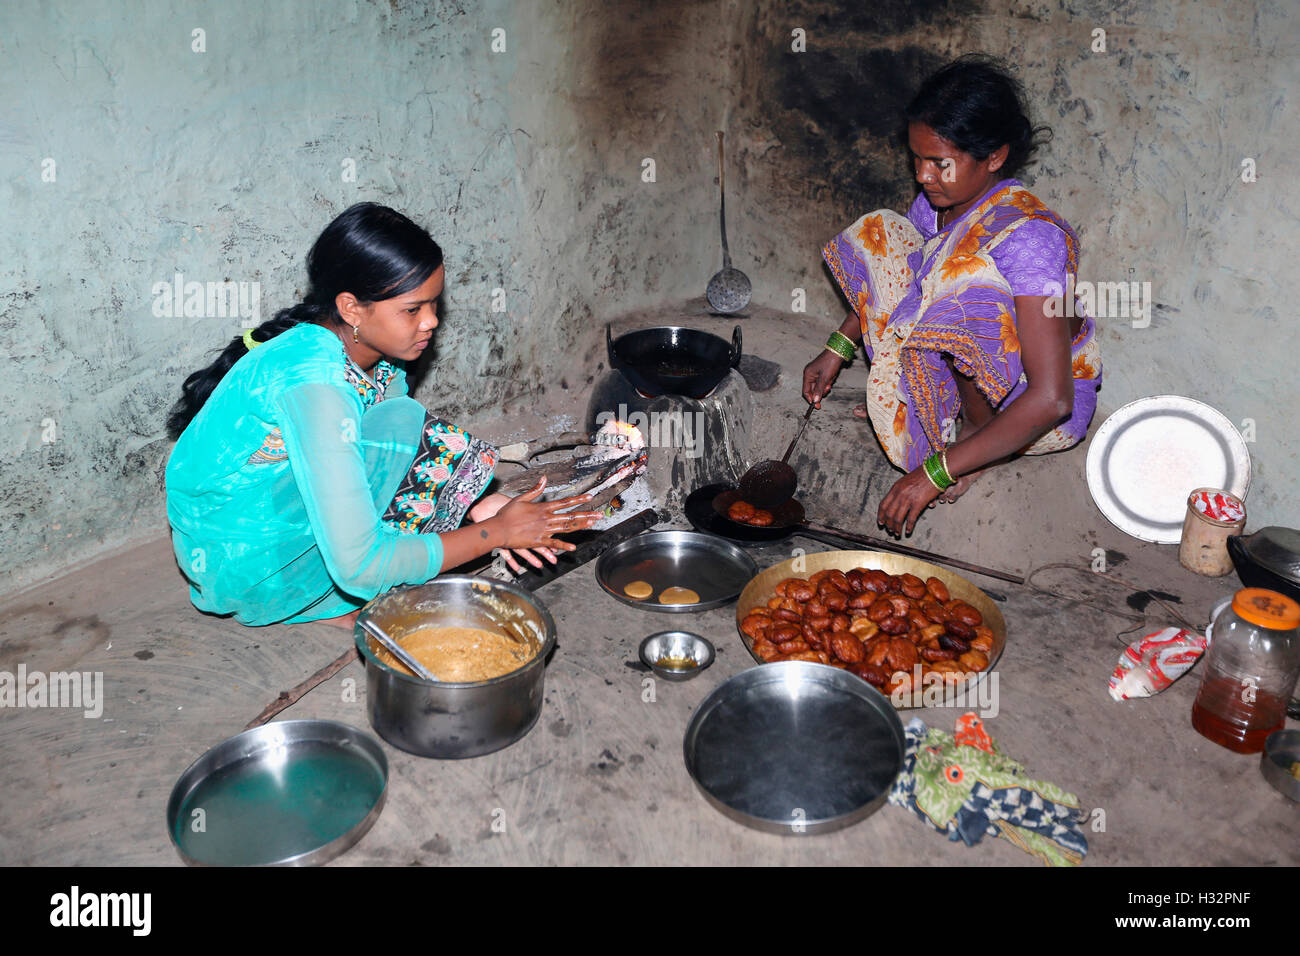 Tribal women making sweets, SAWAR TRIBE, Diwanpali Village, Saraipali Panchayat, Mahasamund Block, Chattisgadh, India Stock Photo